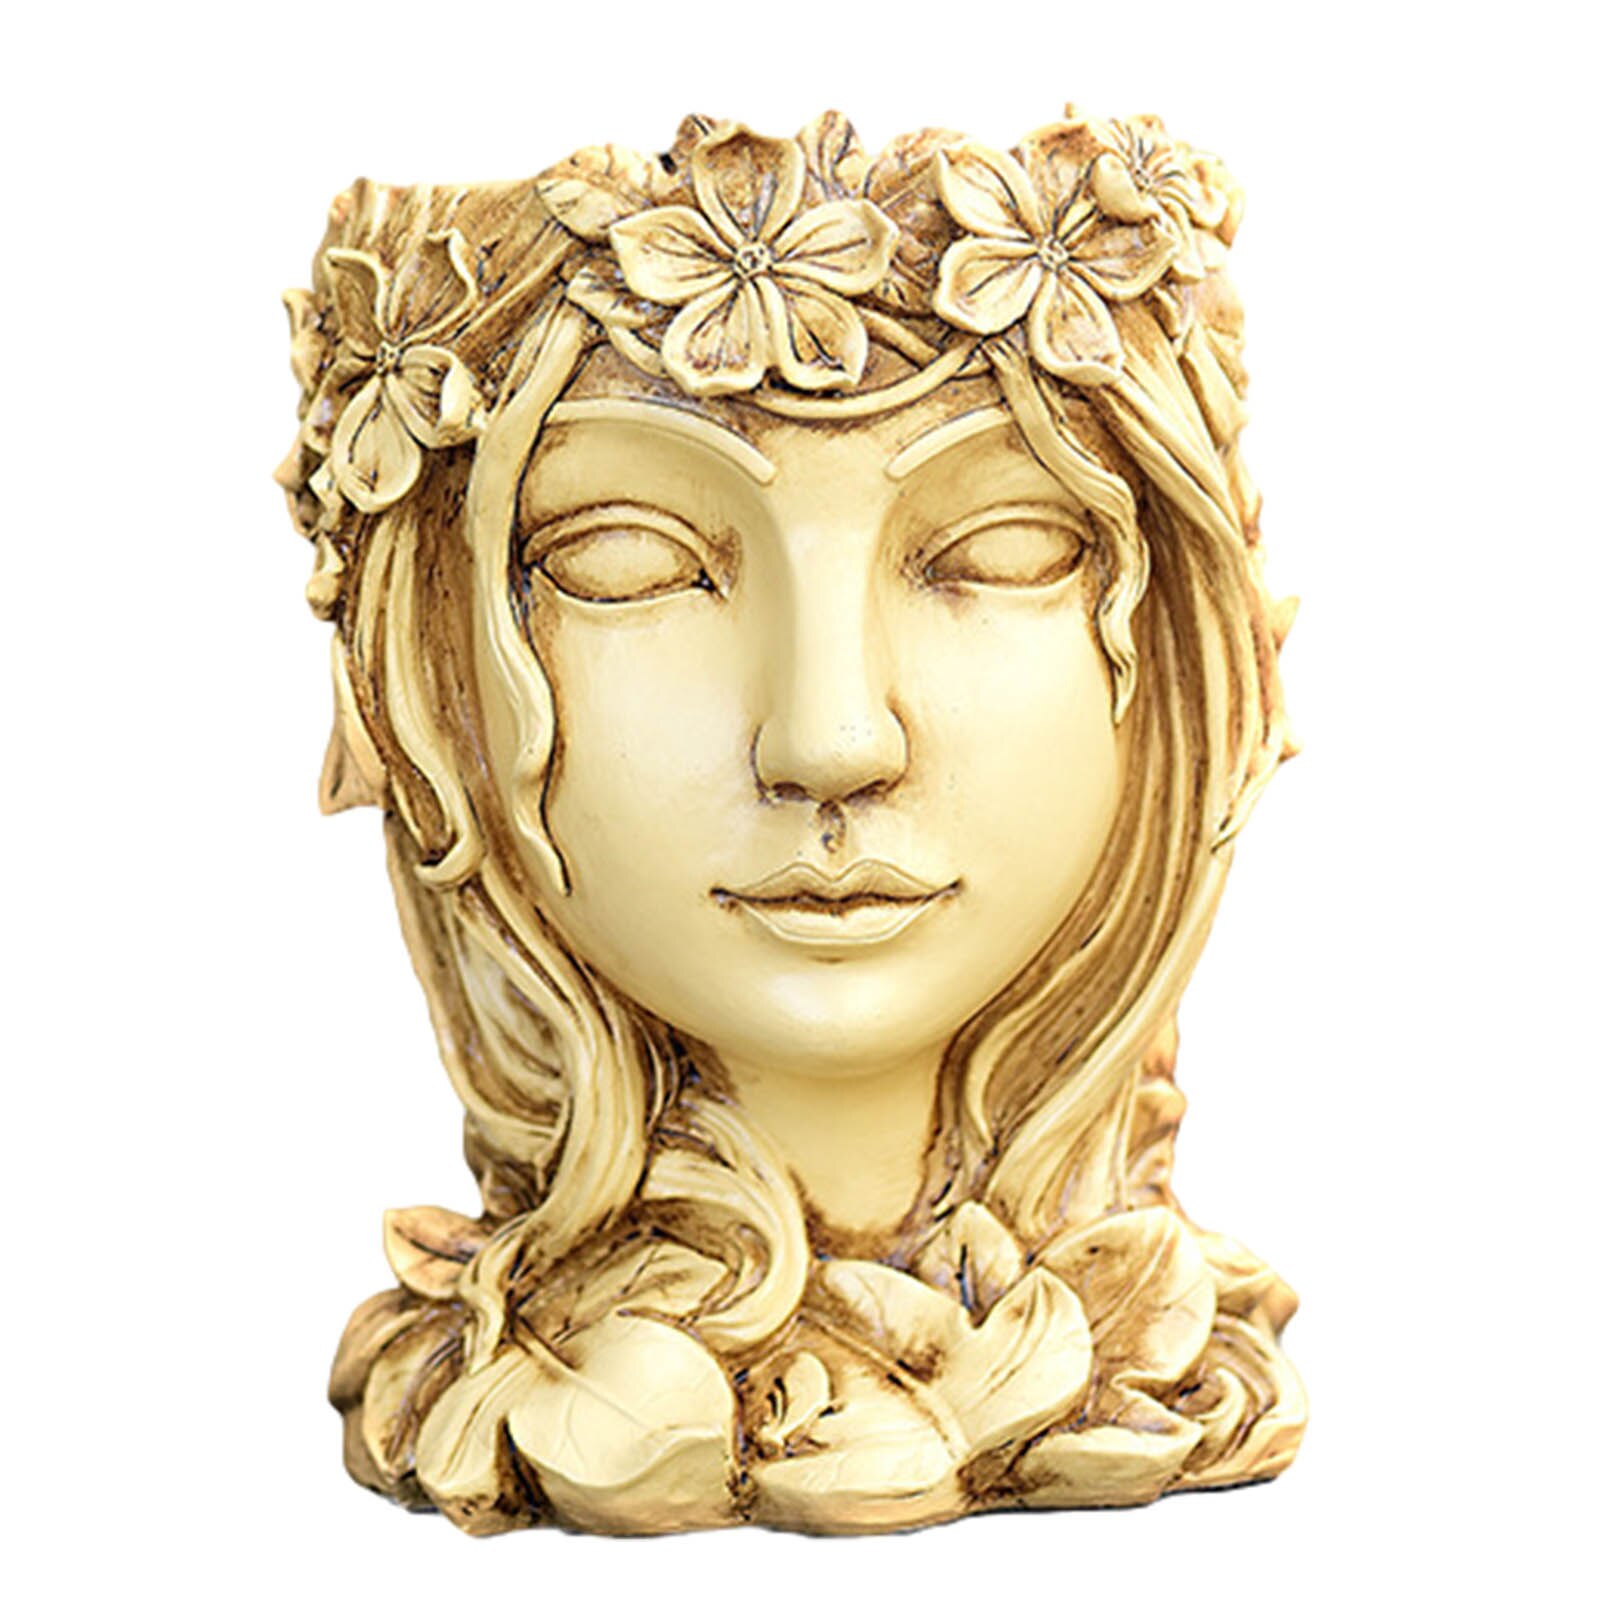 7.9 Inch Goddess Head Planter Statue Resin Flower Pot Succulent Plants Pot Garden Ornament Home Decoration: Wood color